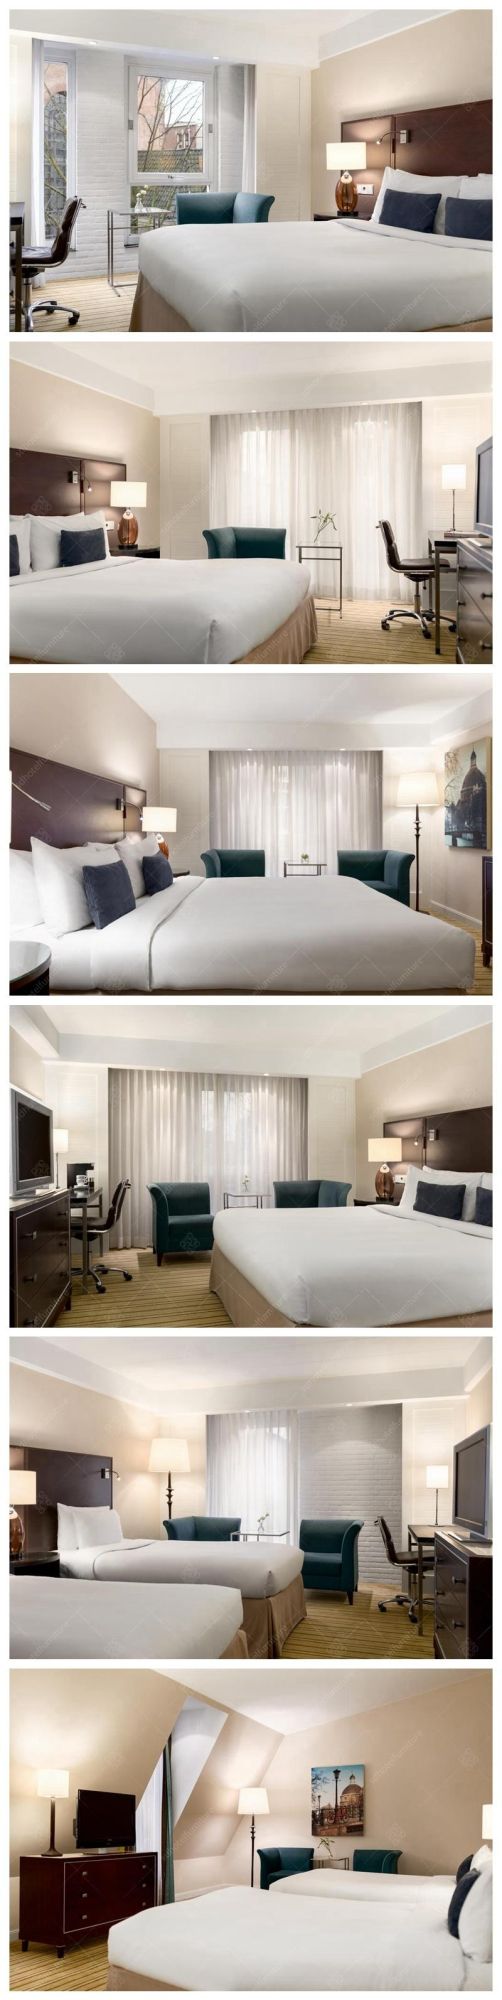 Modern Hotel Comfortable Design Bedroom Furniture Sets for Sale